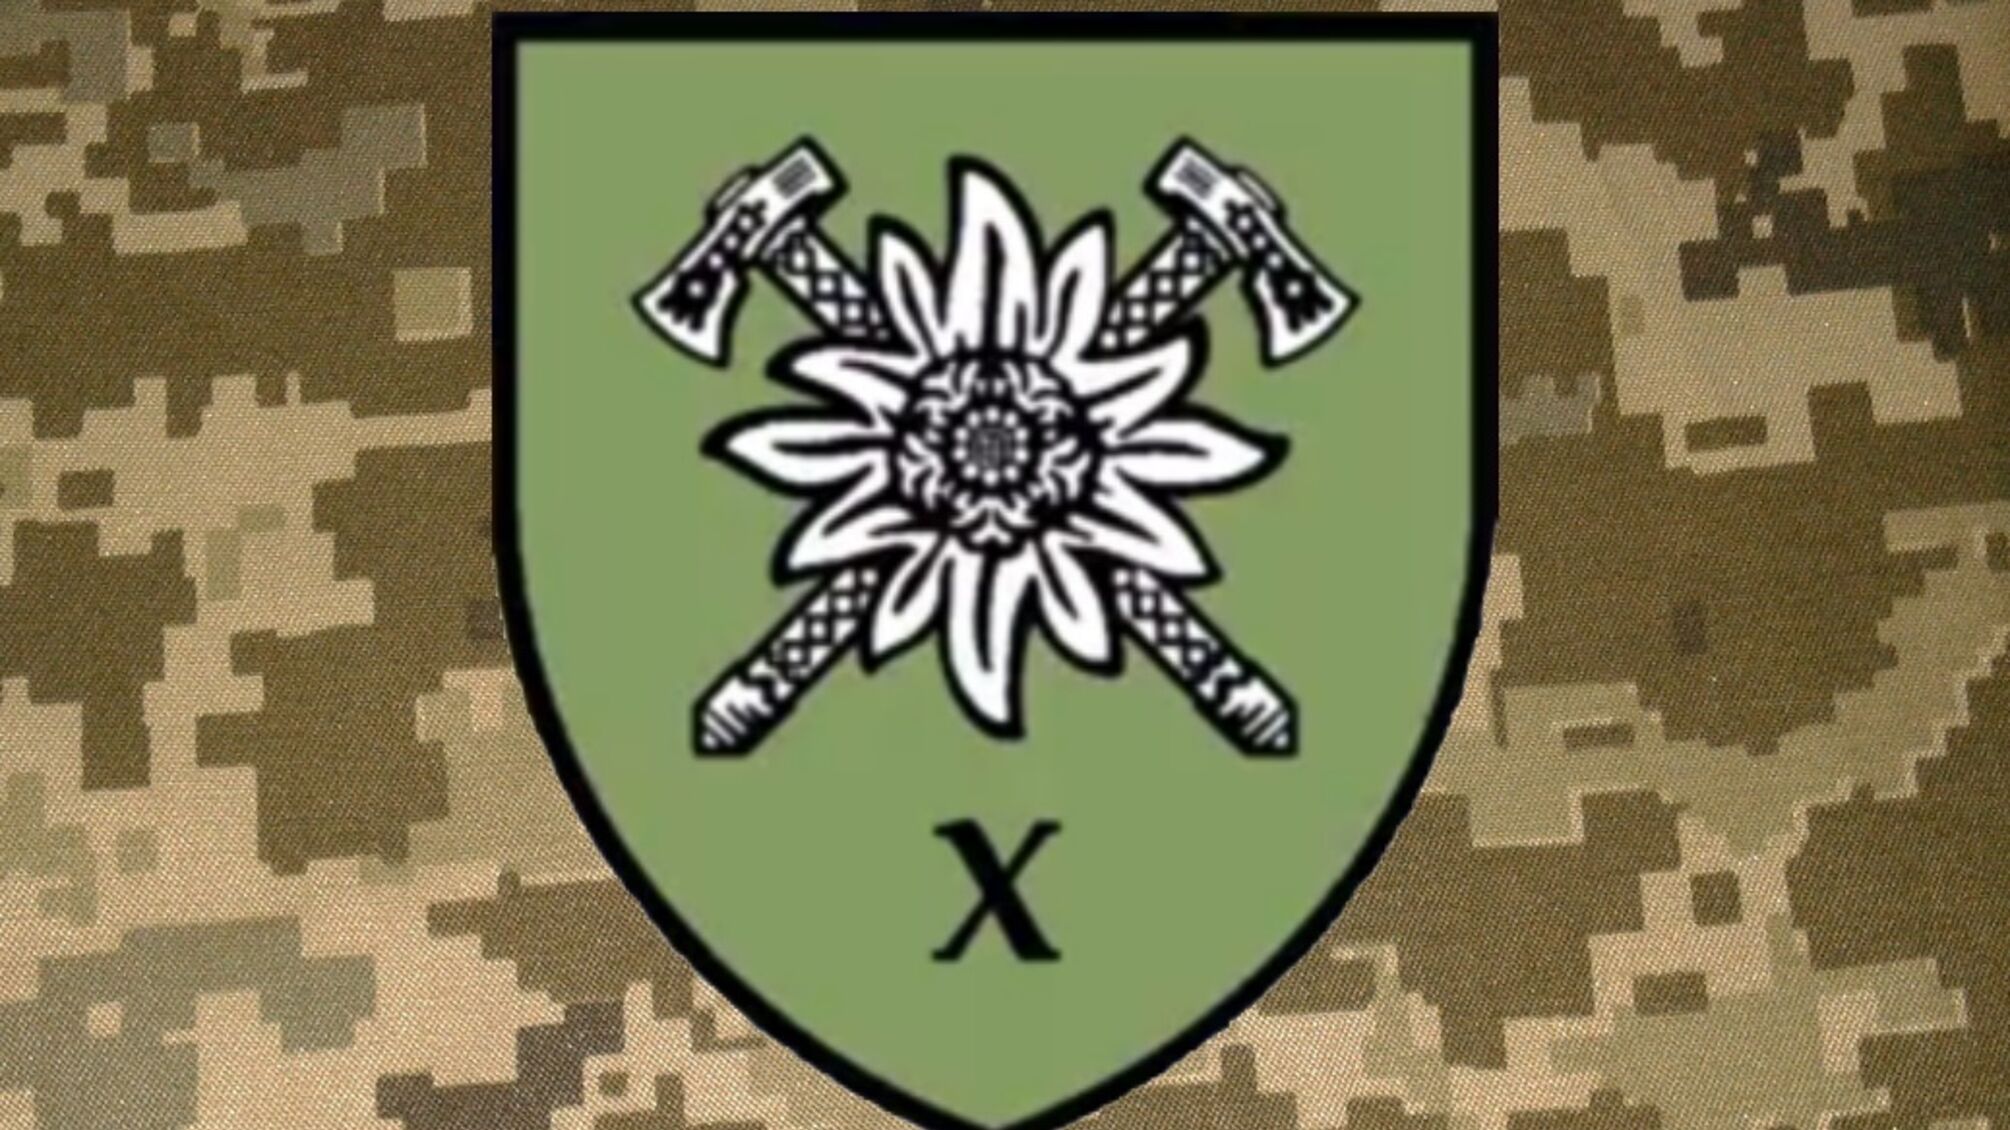 Эдельвейс и скрещенные гуцульские топоры изображены на эмблеме 10-й бригады